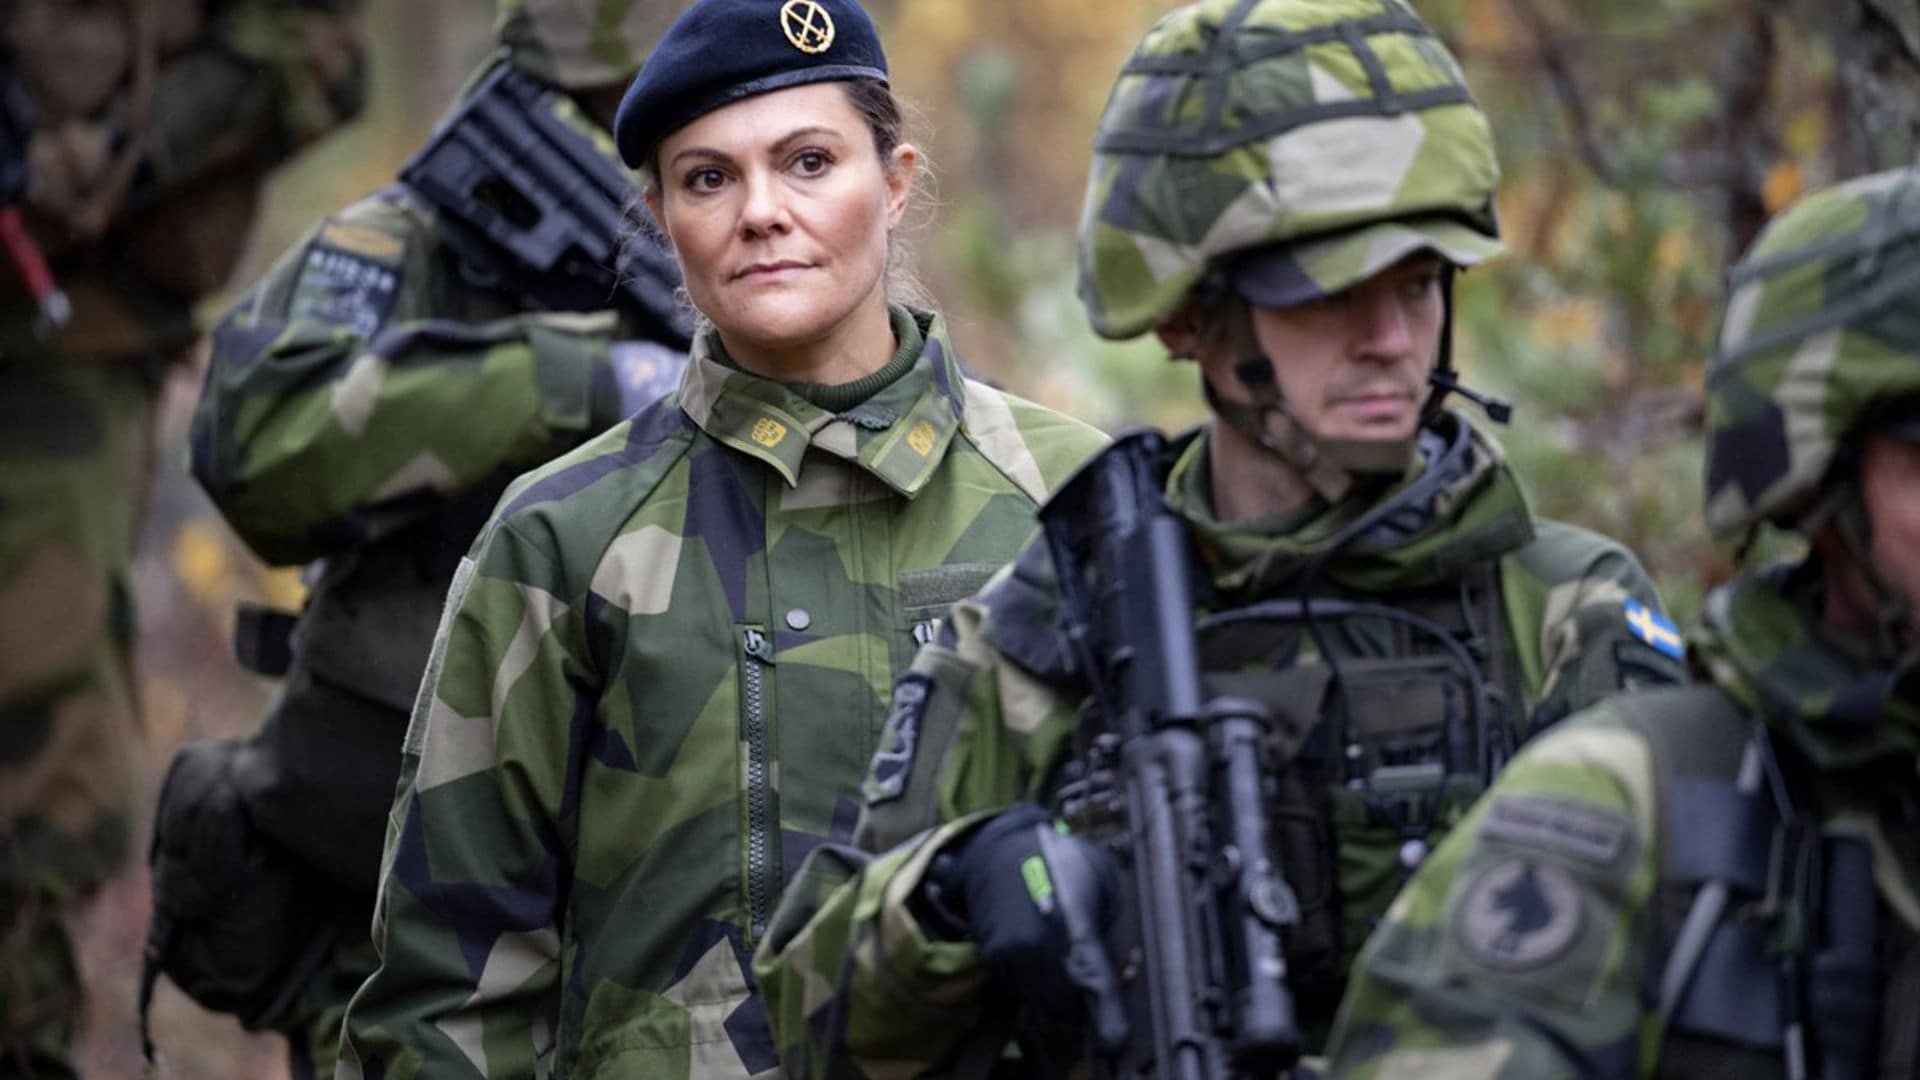 victoria de suecia de militar